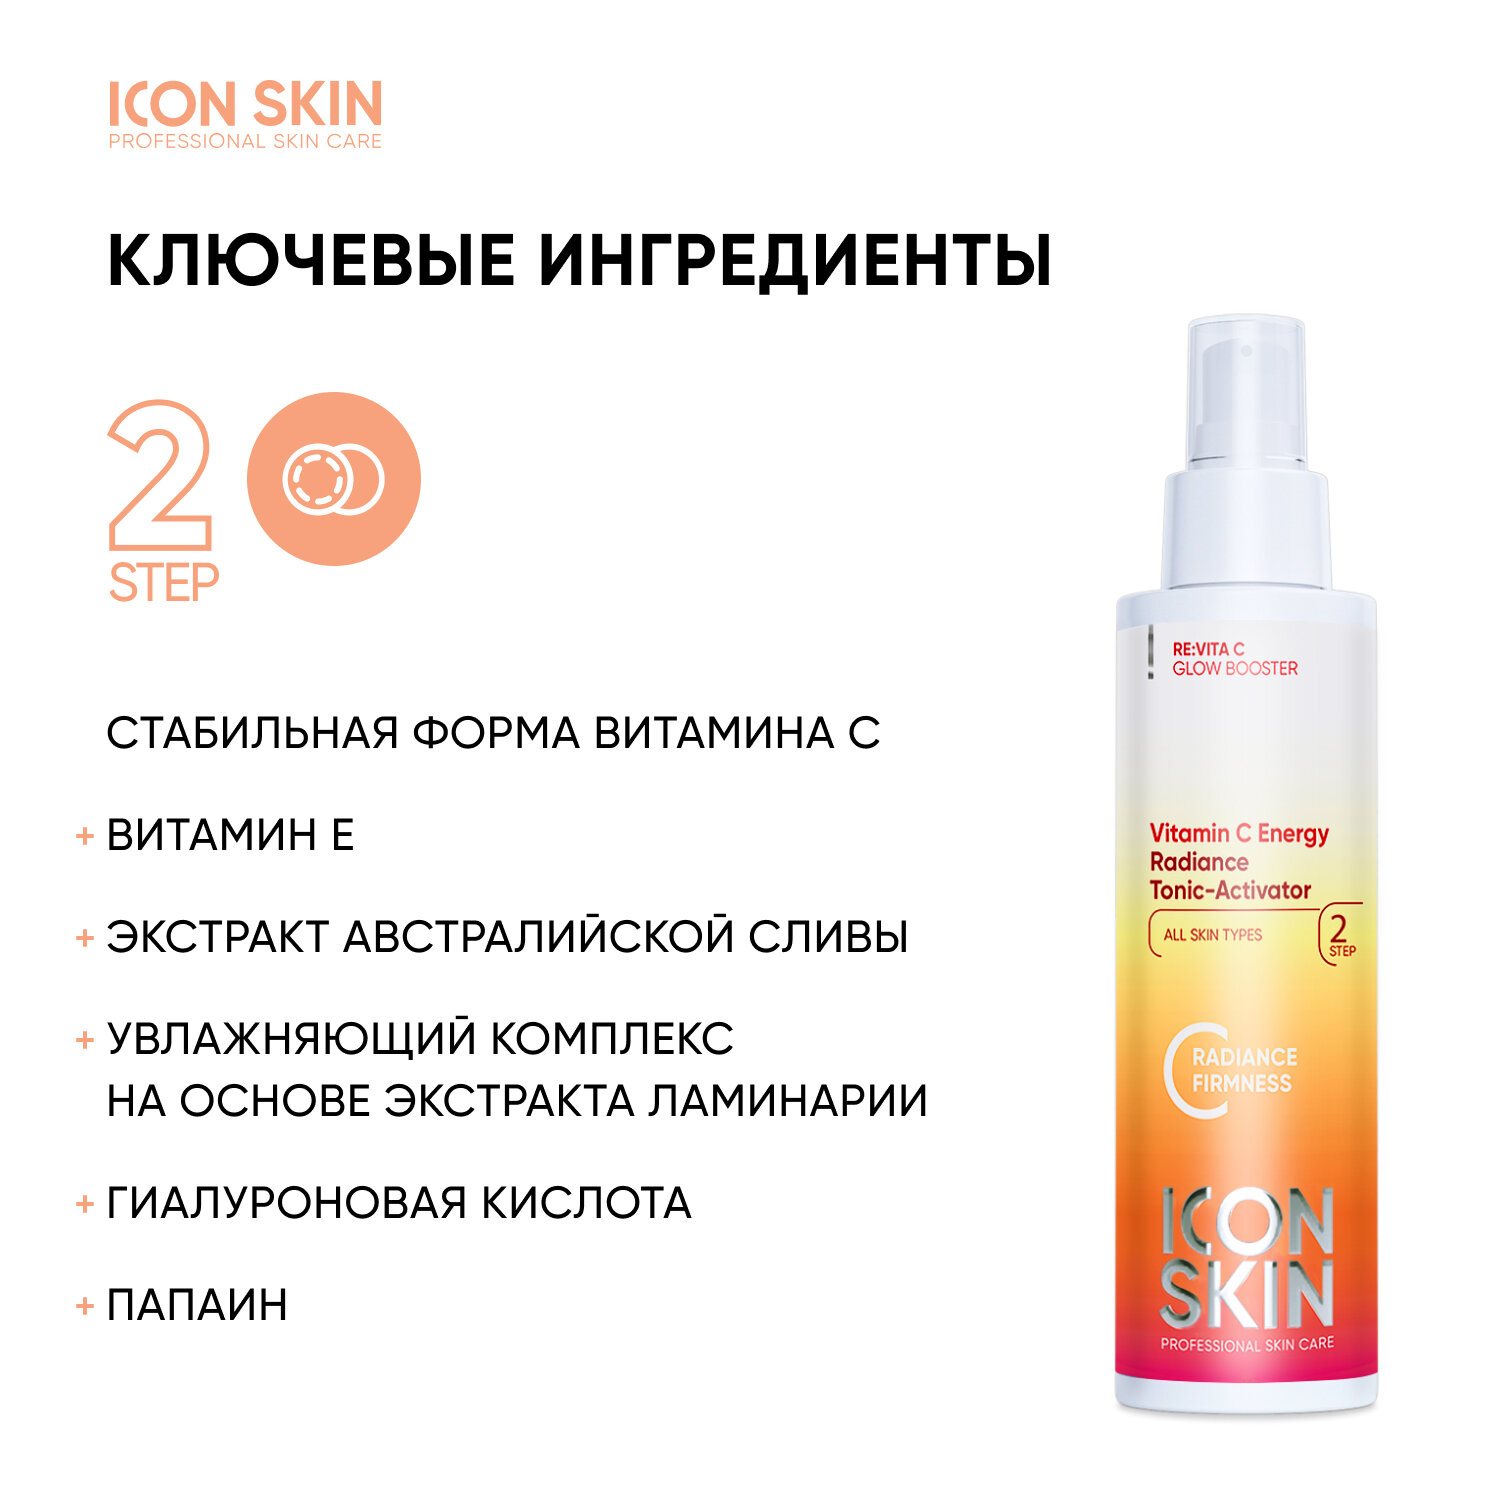 ICON SKIN / Тоник-активатор для лица Vitamin C Energy с витамином С для сияния кожи. Проф уход за тусклой кожей. 150мл.